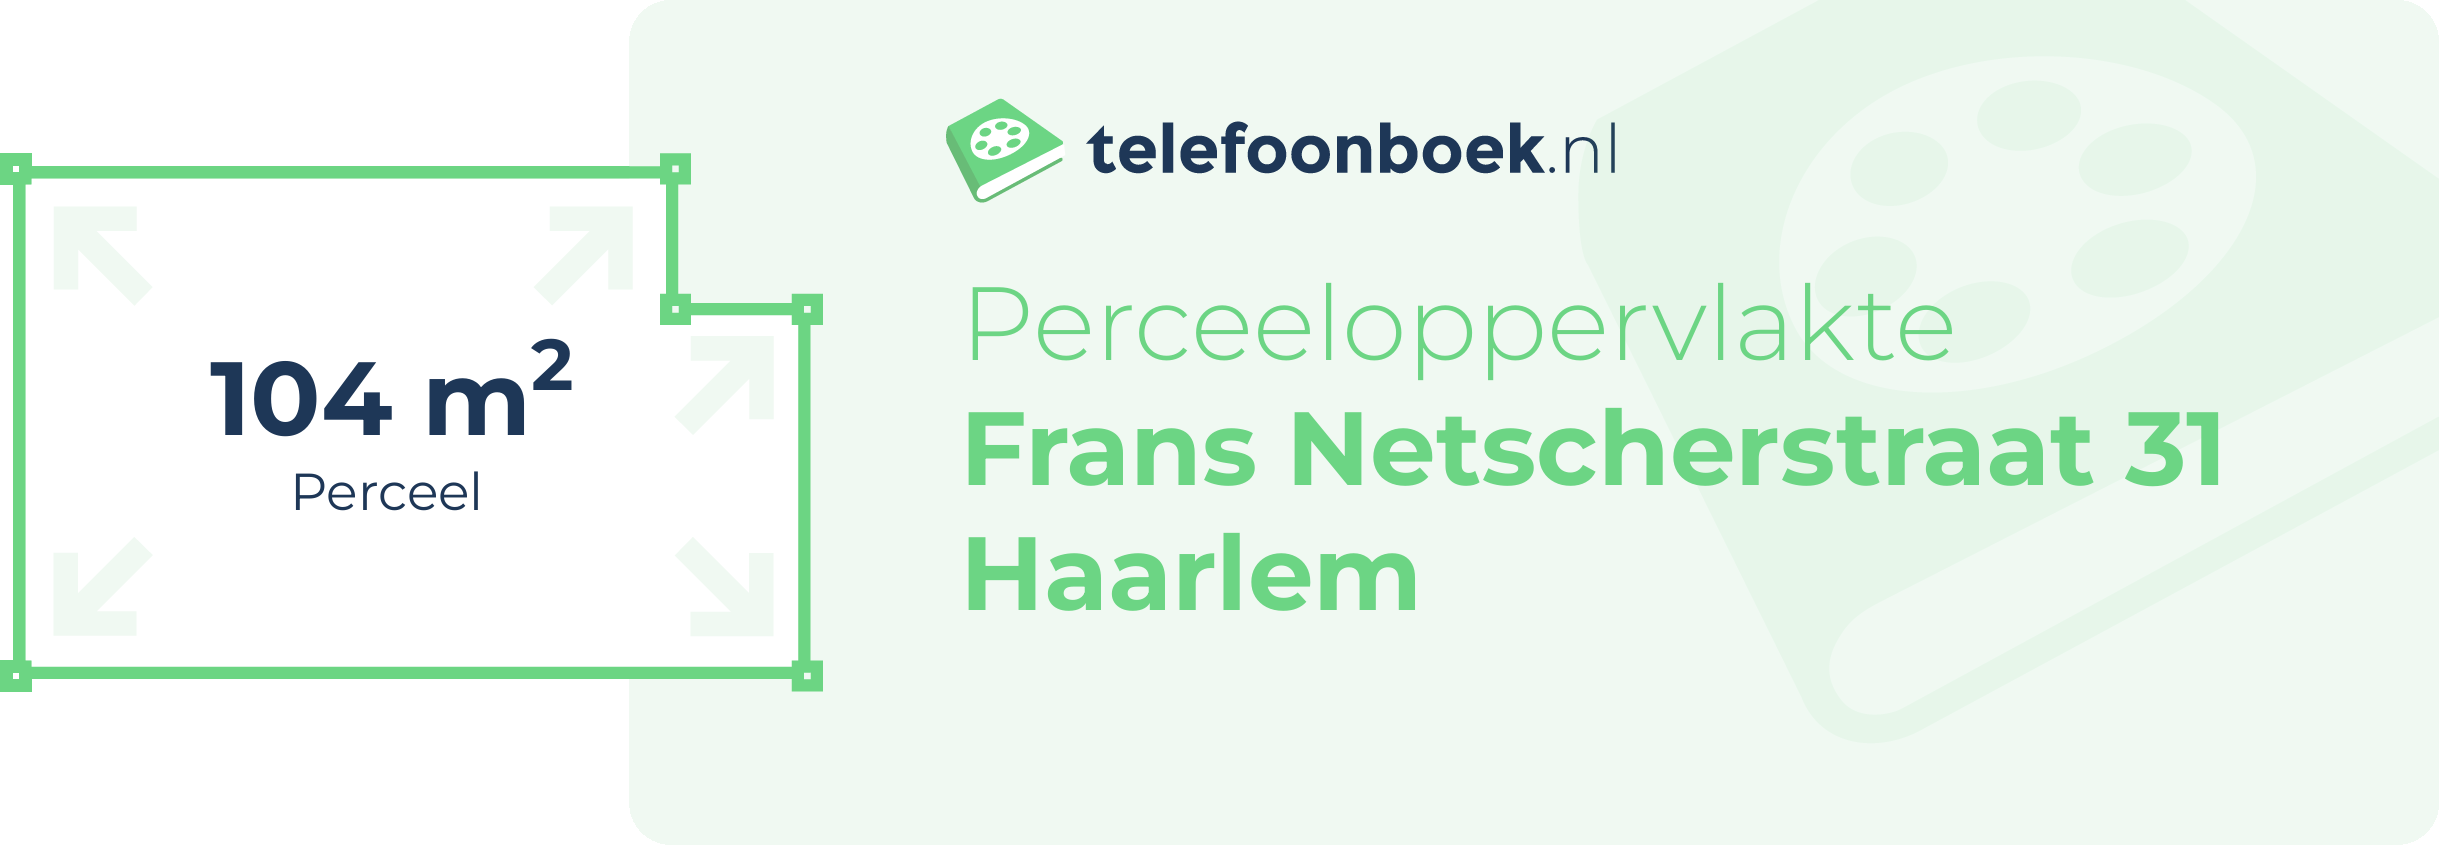 Perceeloppervlakte Frans Netscherstraat 31 Haarlem